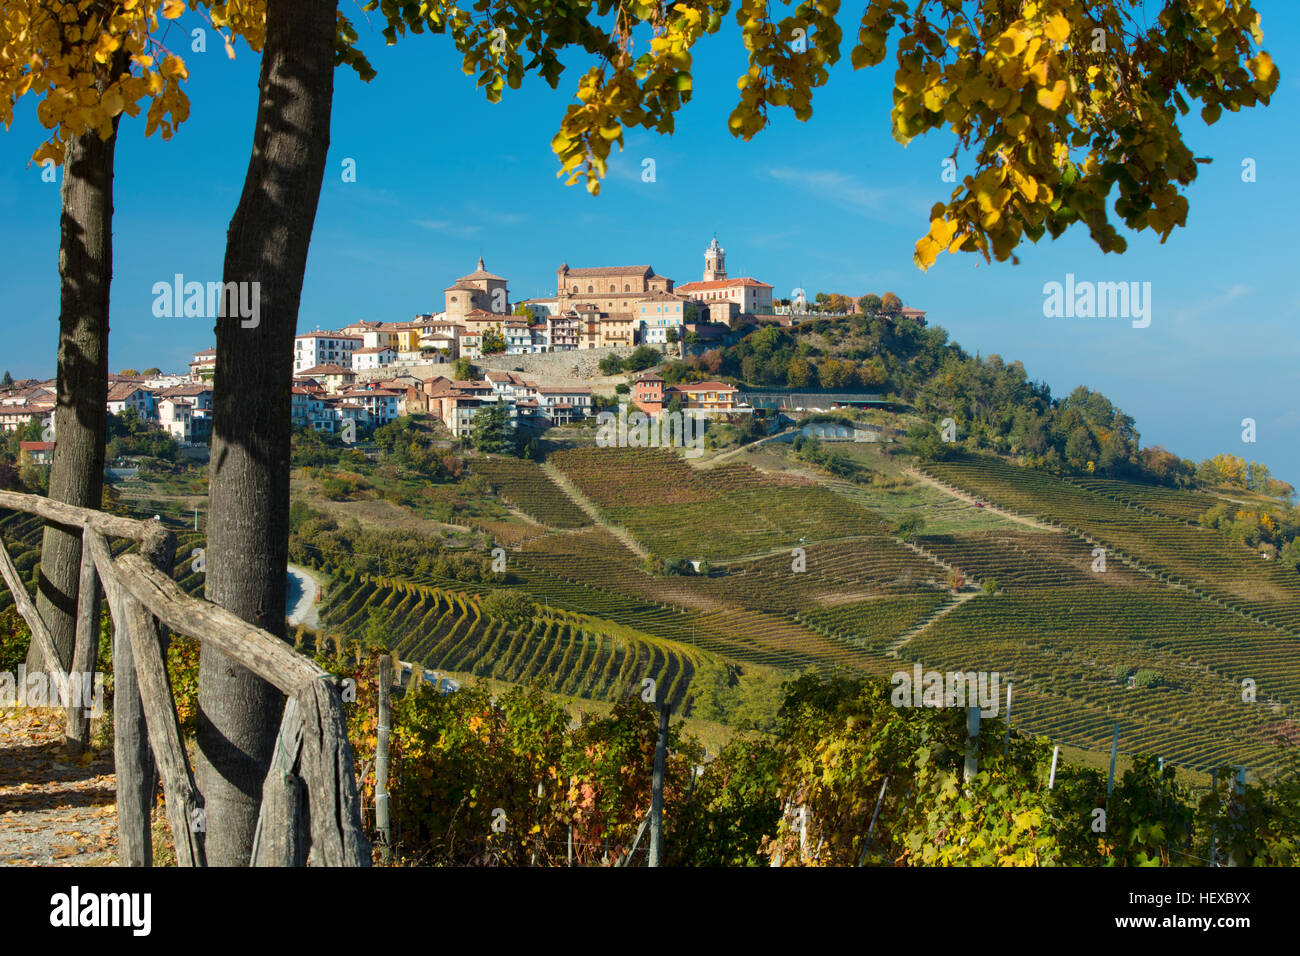 Vue sur les vignes de Nebbiolo ville médiévale de La Morra, Piemonte, Italie Banque D'Images